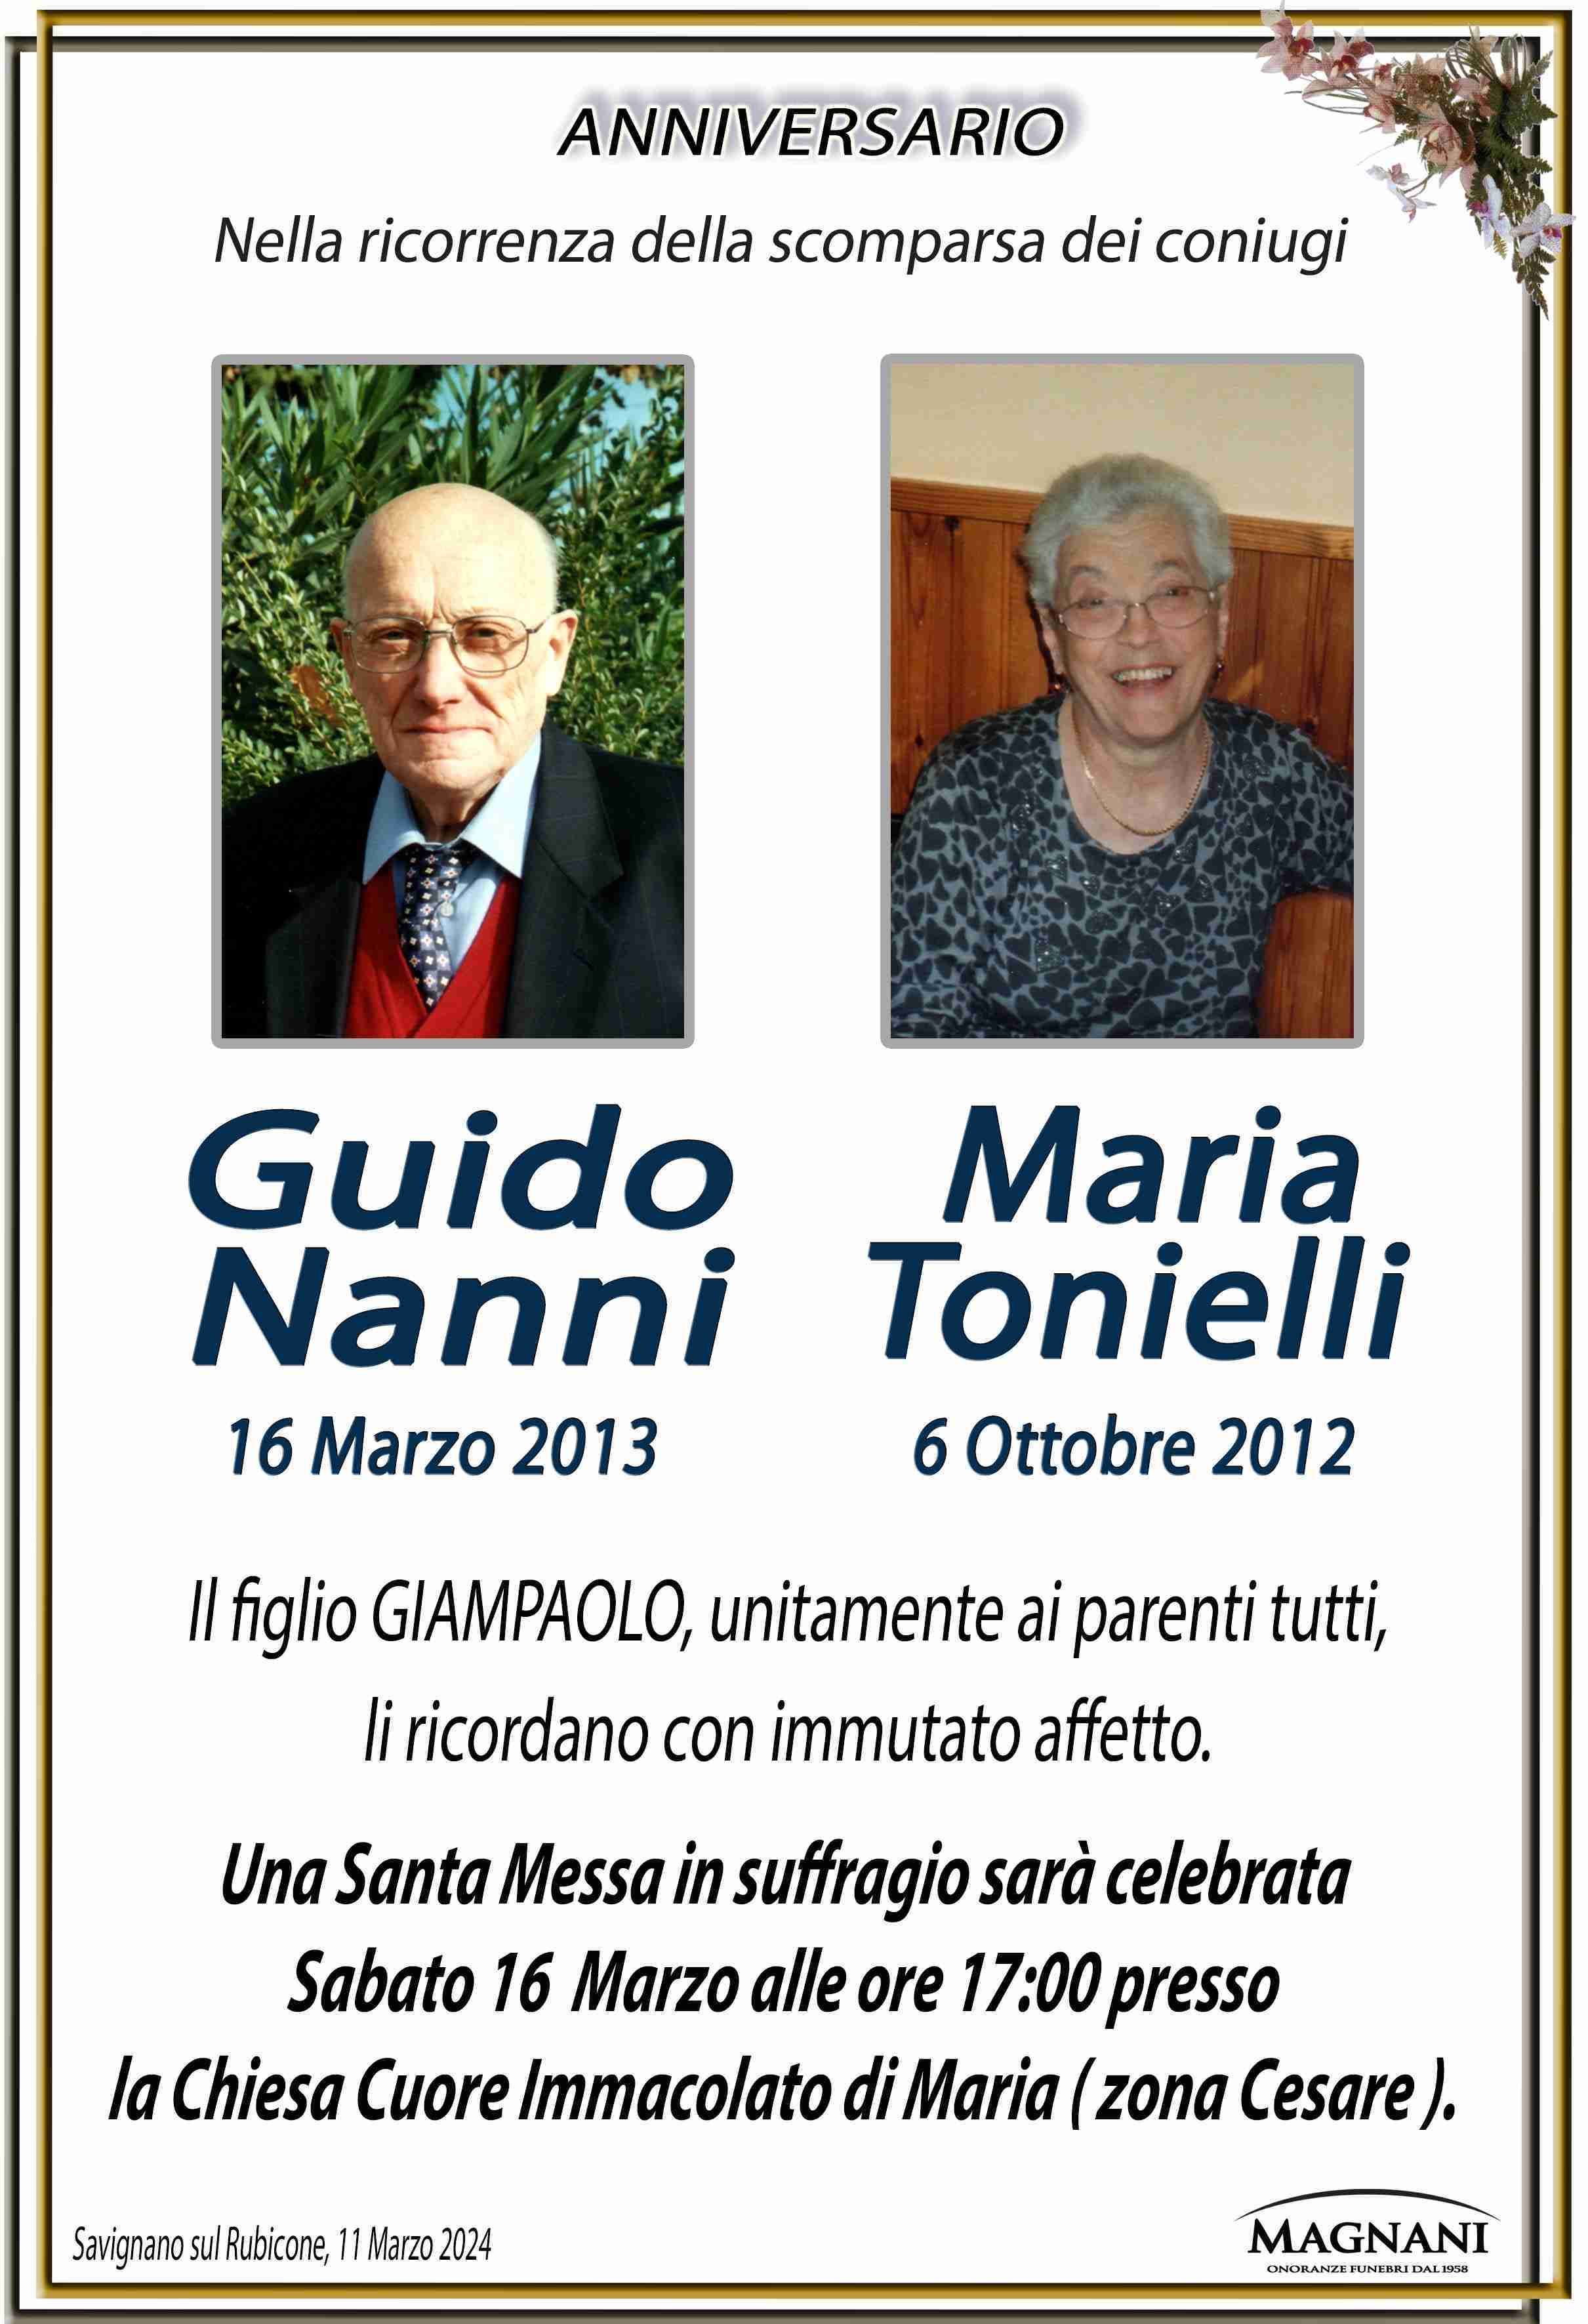 Guido Nanni e Maria Tonielli